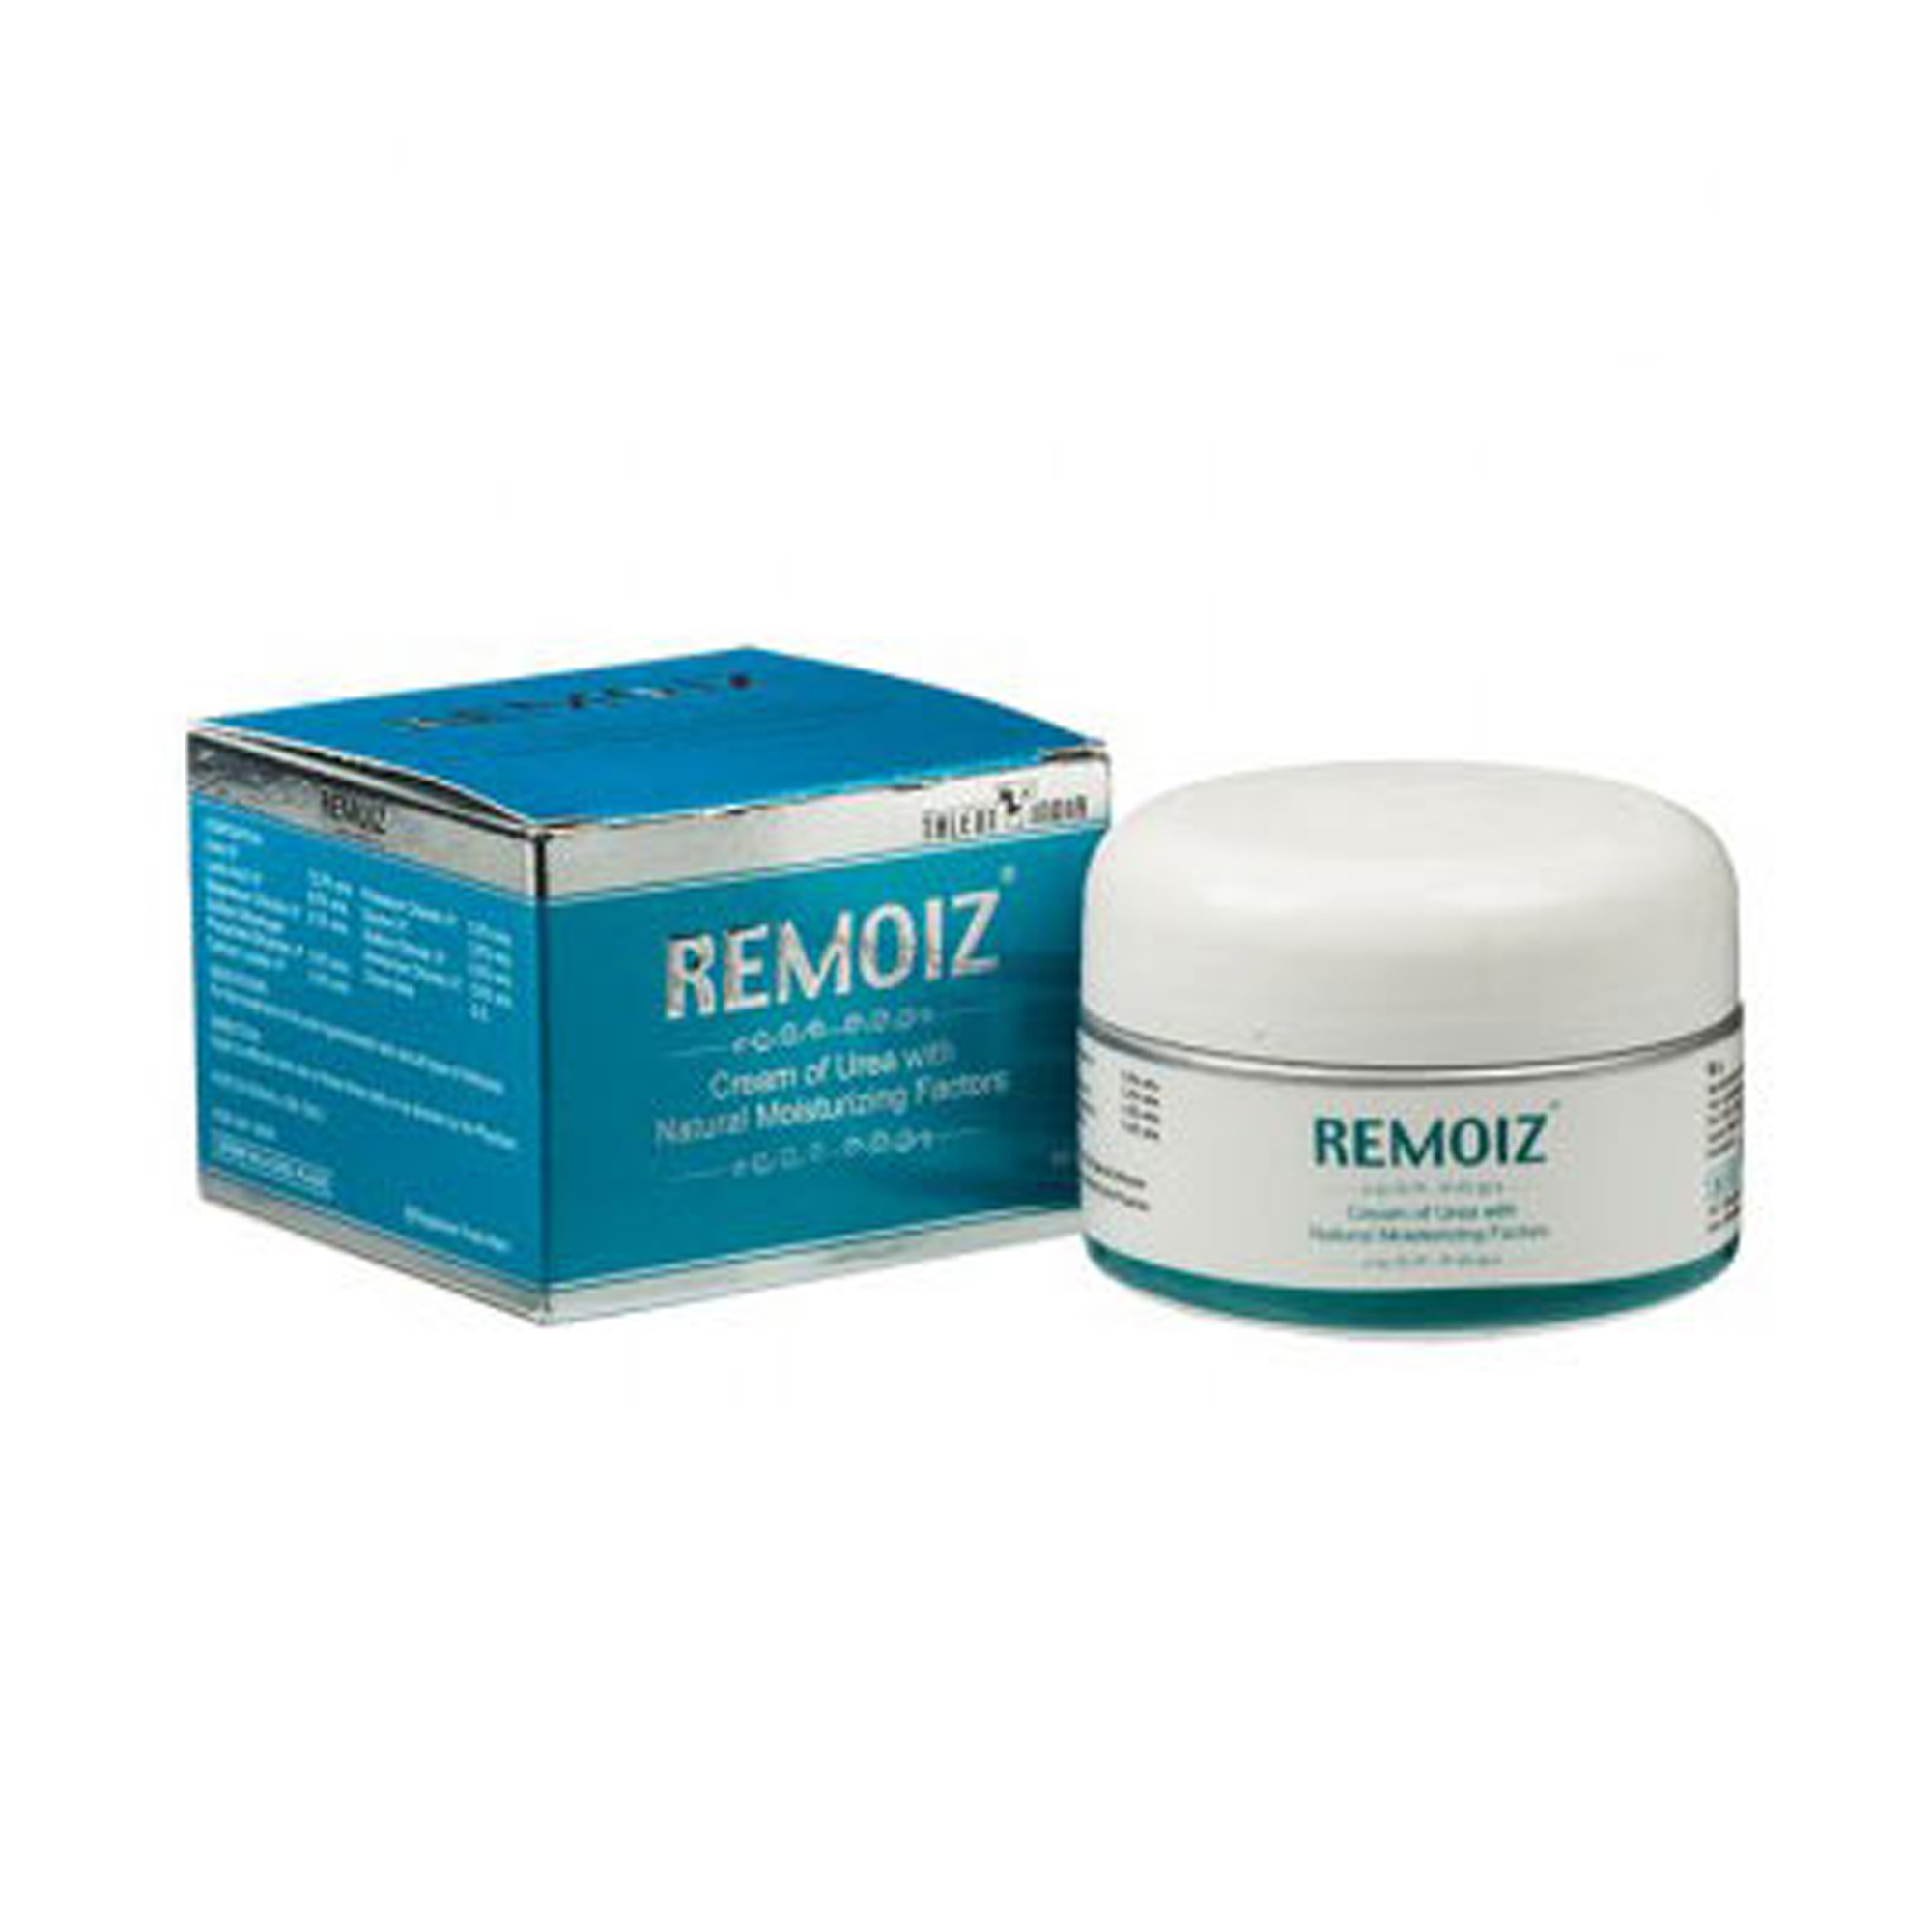 Remoiz Cream Moisturizer for Dry, Rough, Scaly & Itchy Skin